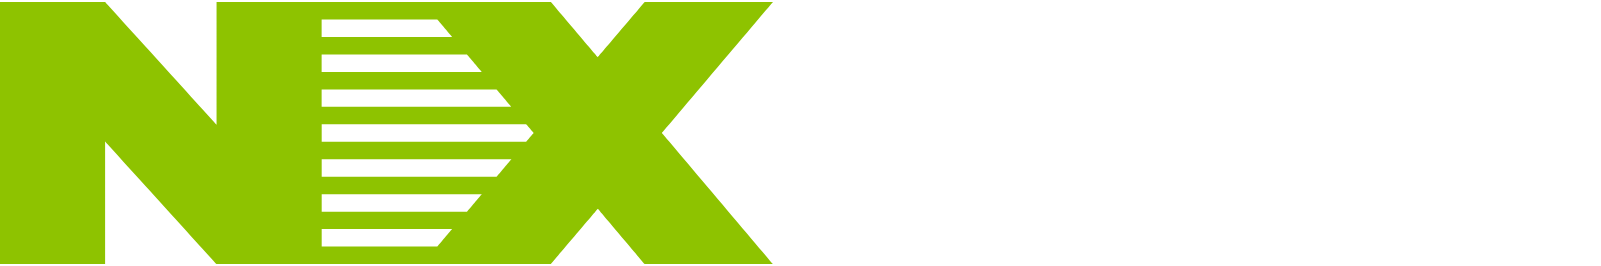 Nippon Express
 logo large for dark backgrounds (transparent PNG)